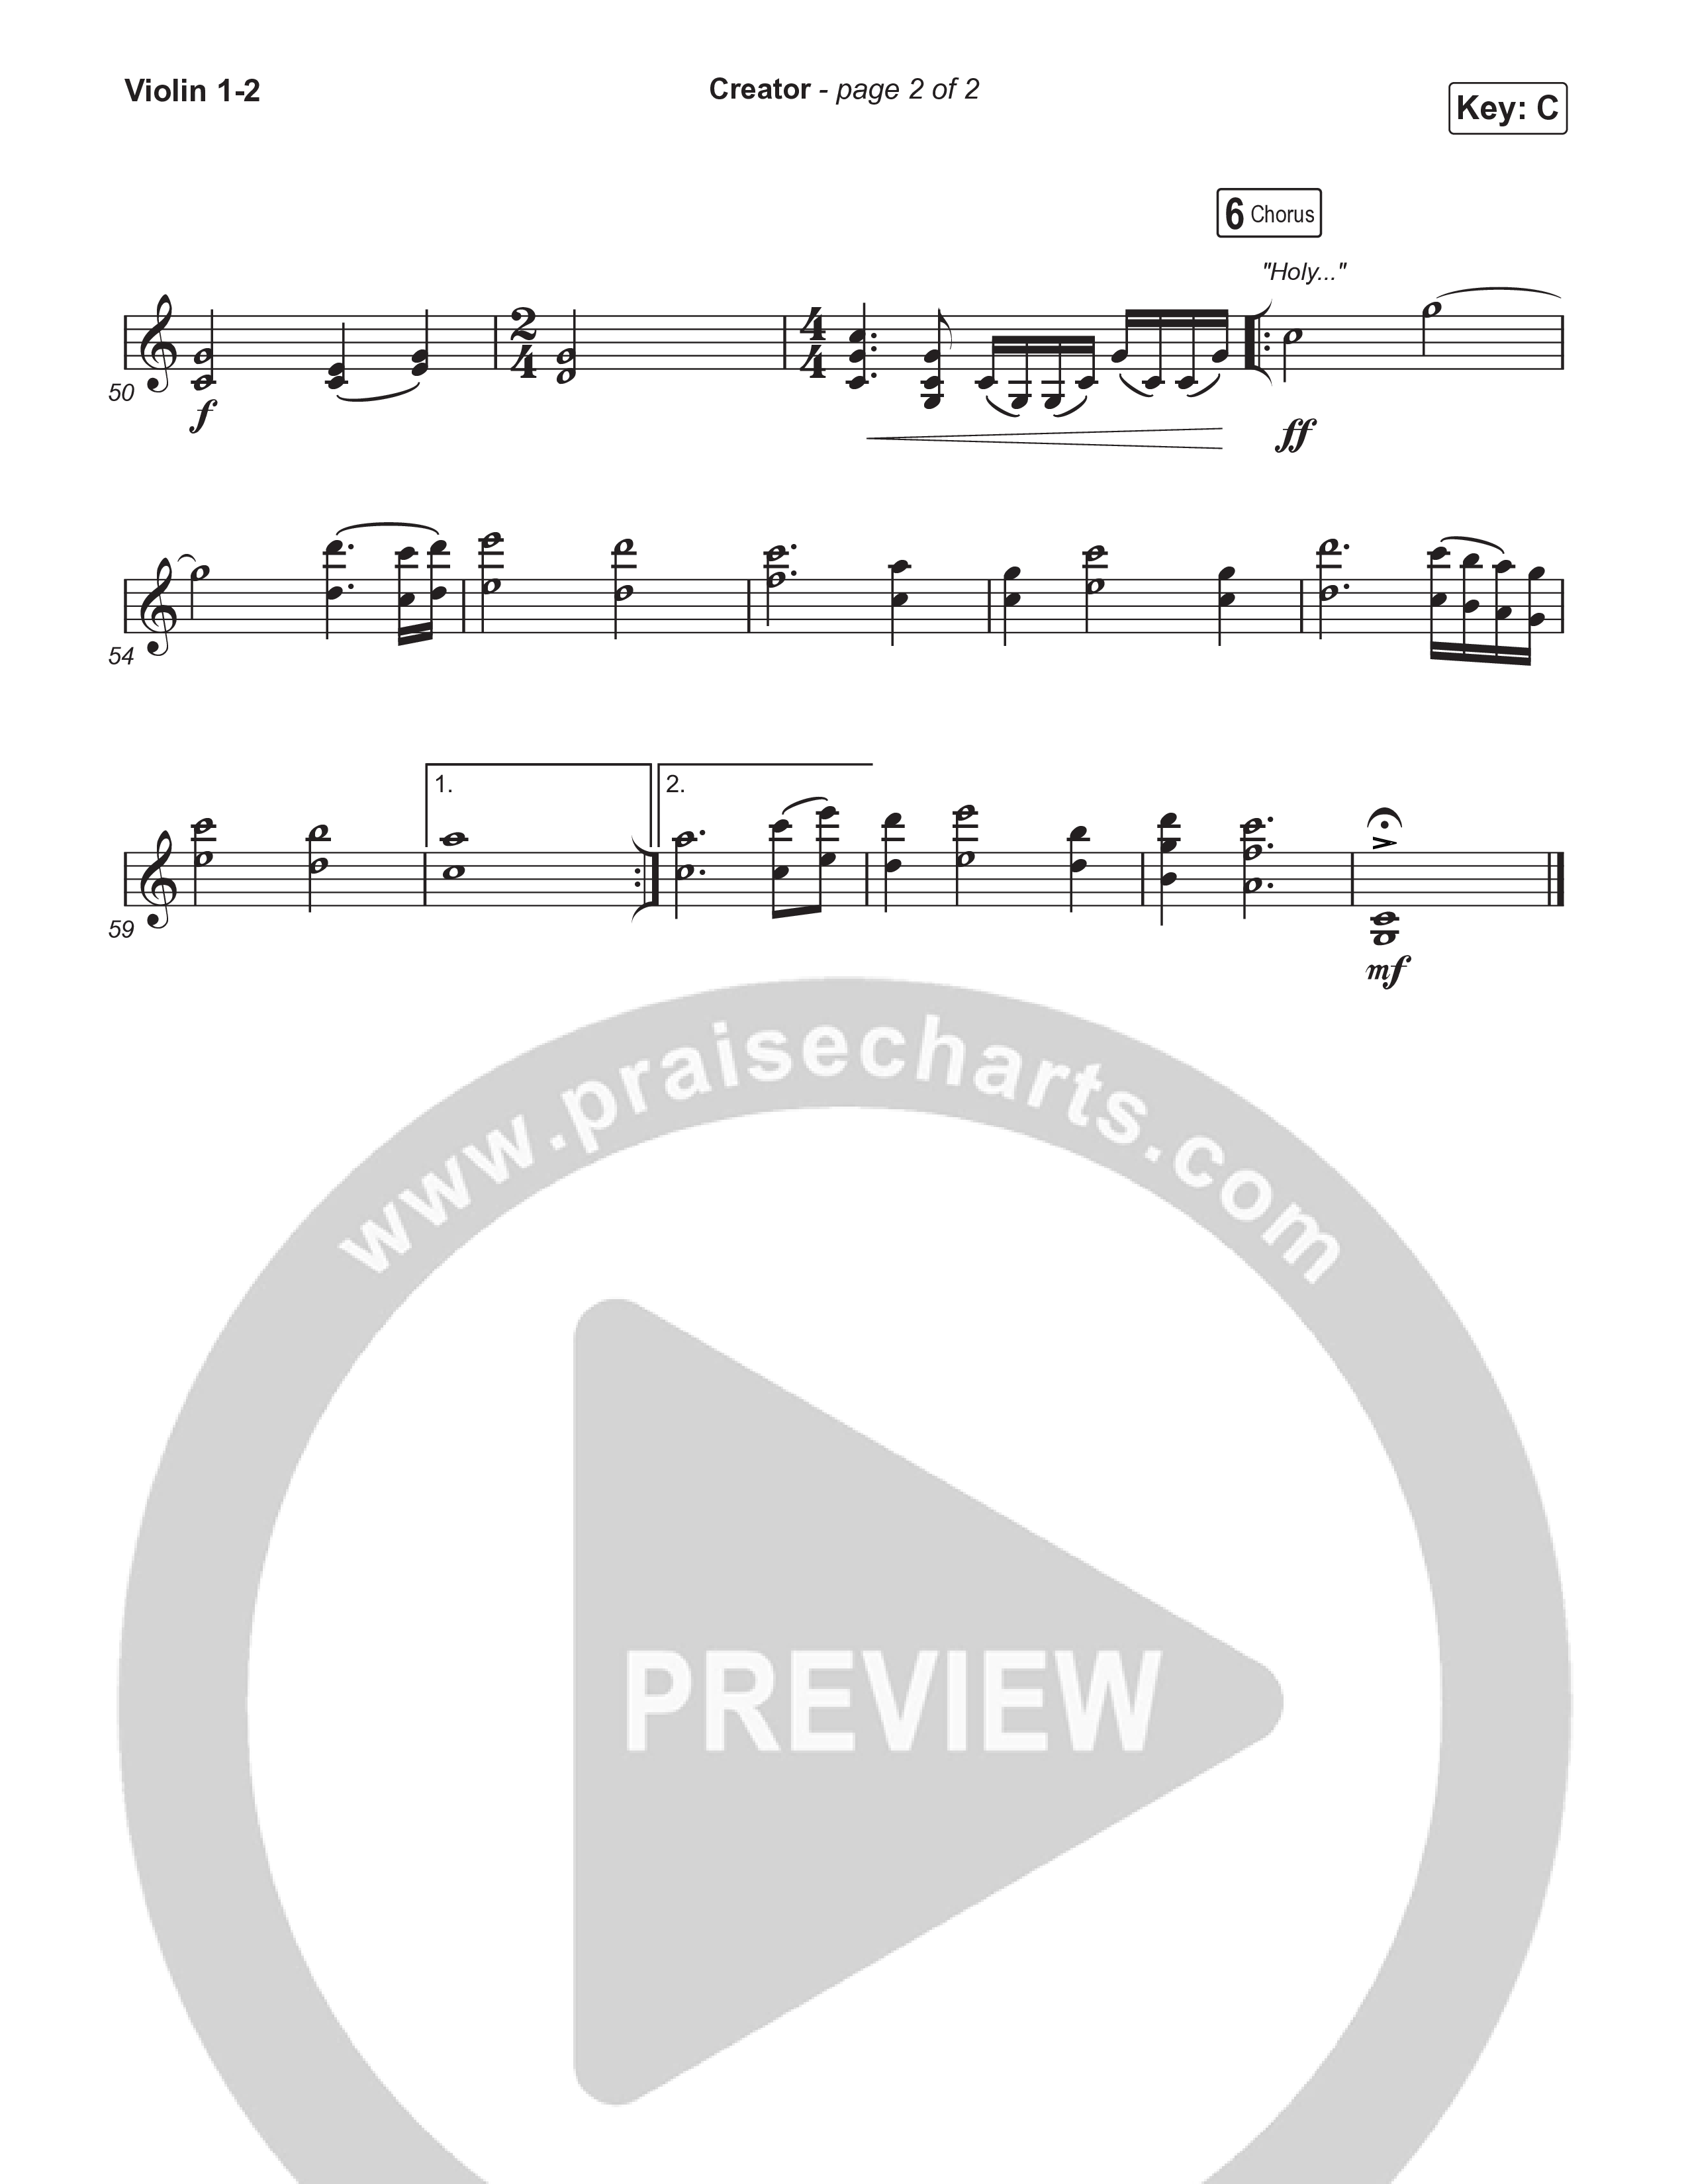 Creator (Worship Choir/SAB) Violin 1/2 (Phil Wickham)